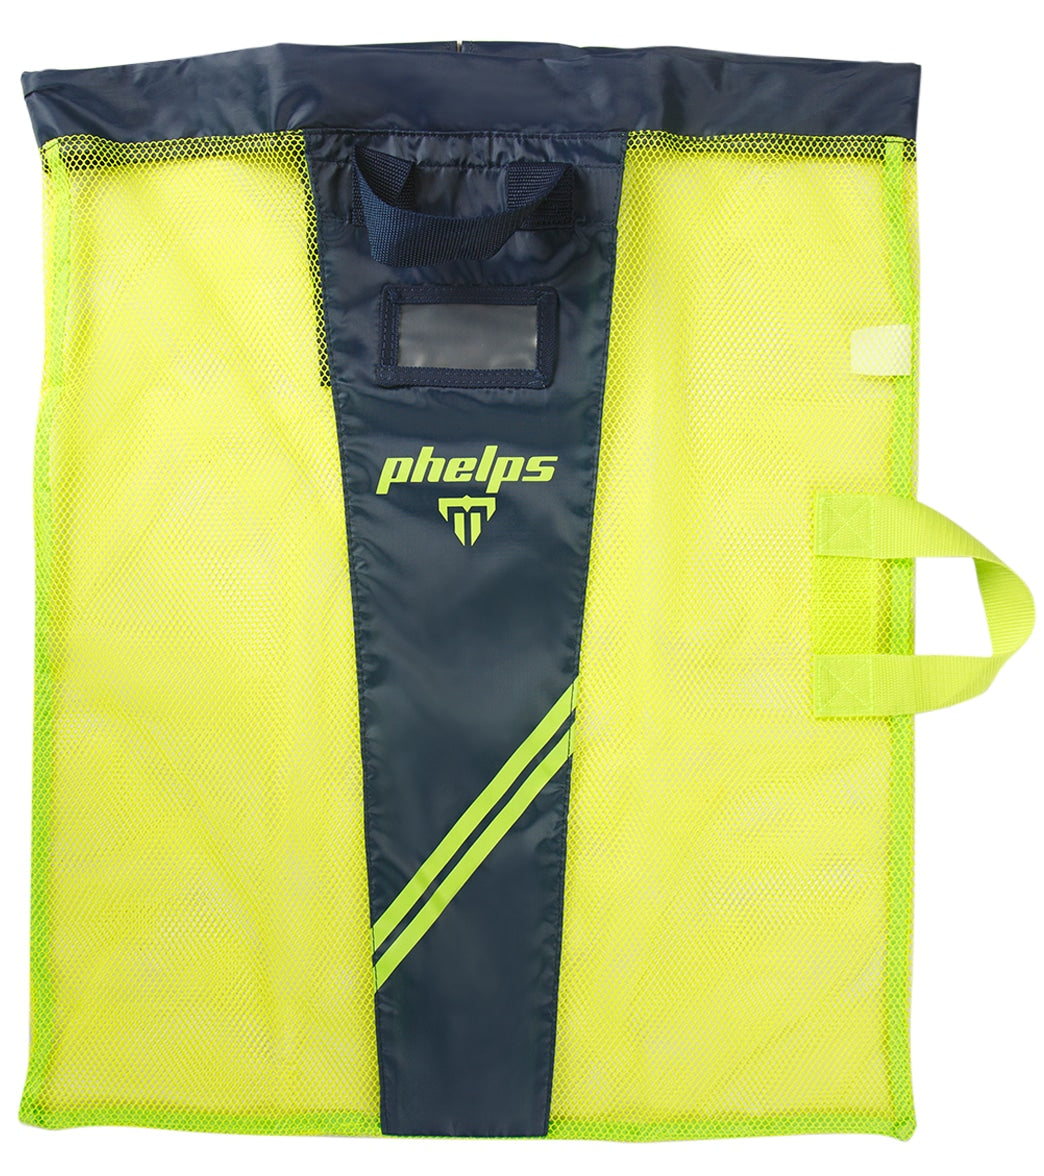 Phelps Swim Gear Bag - Bright Green/Navy Os - Swimoutlet.com